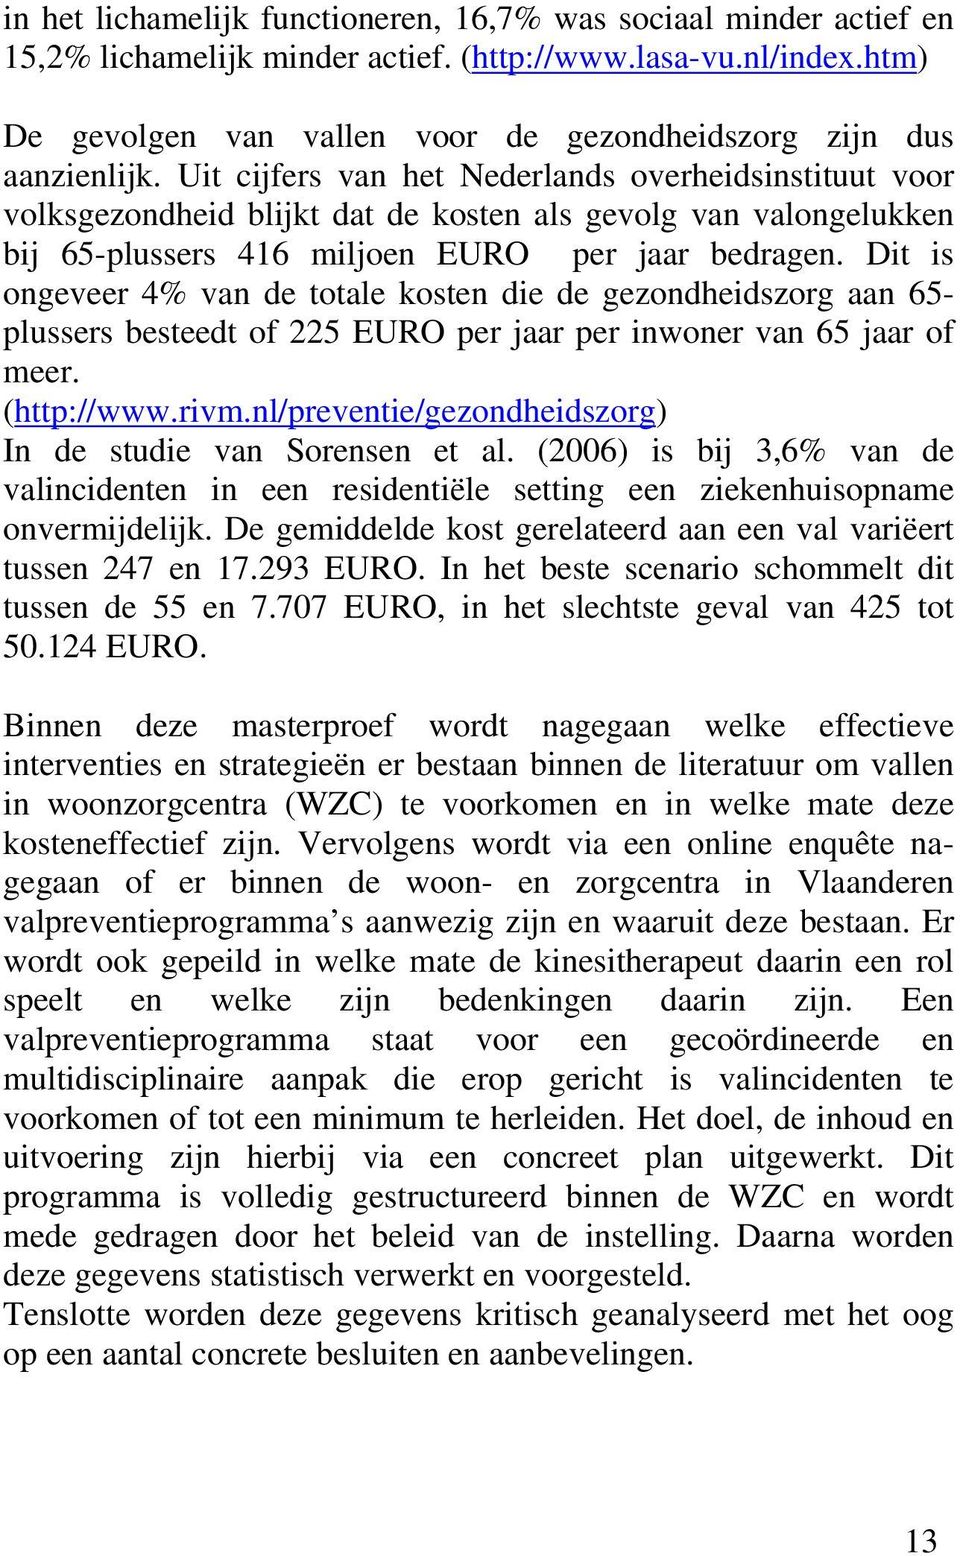 Uit cijfers van het Nederlands overheidsinstituut voor volksgezondheid blijkt dat de kosten als gevolg van valongelukken bij 65-plussers 416 miljoen EURO per jaar bedragen.